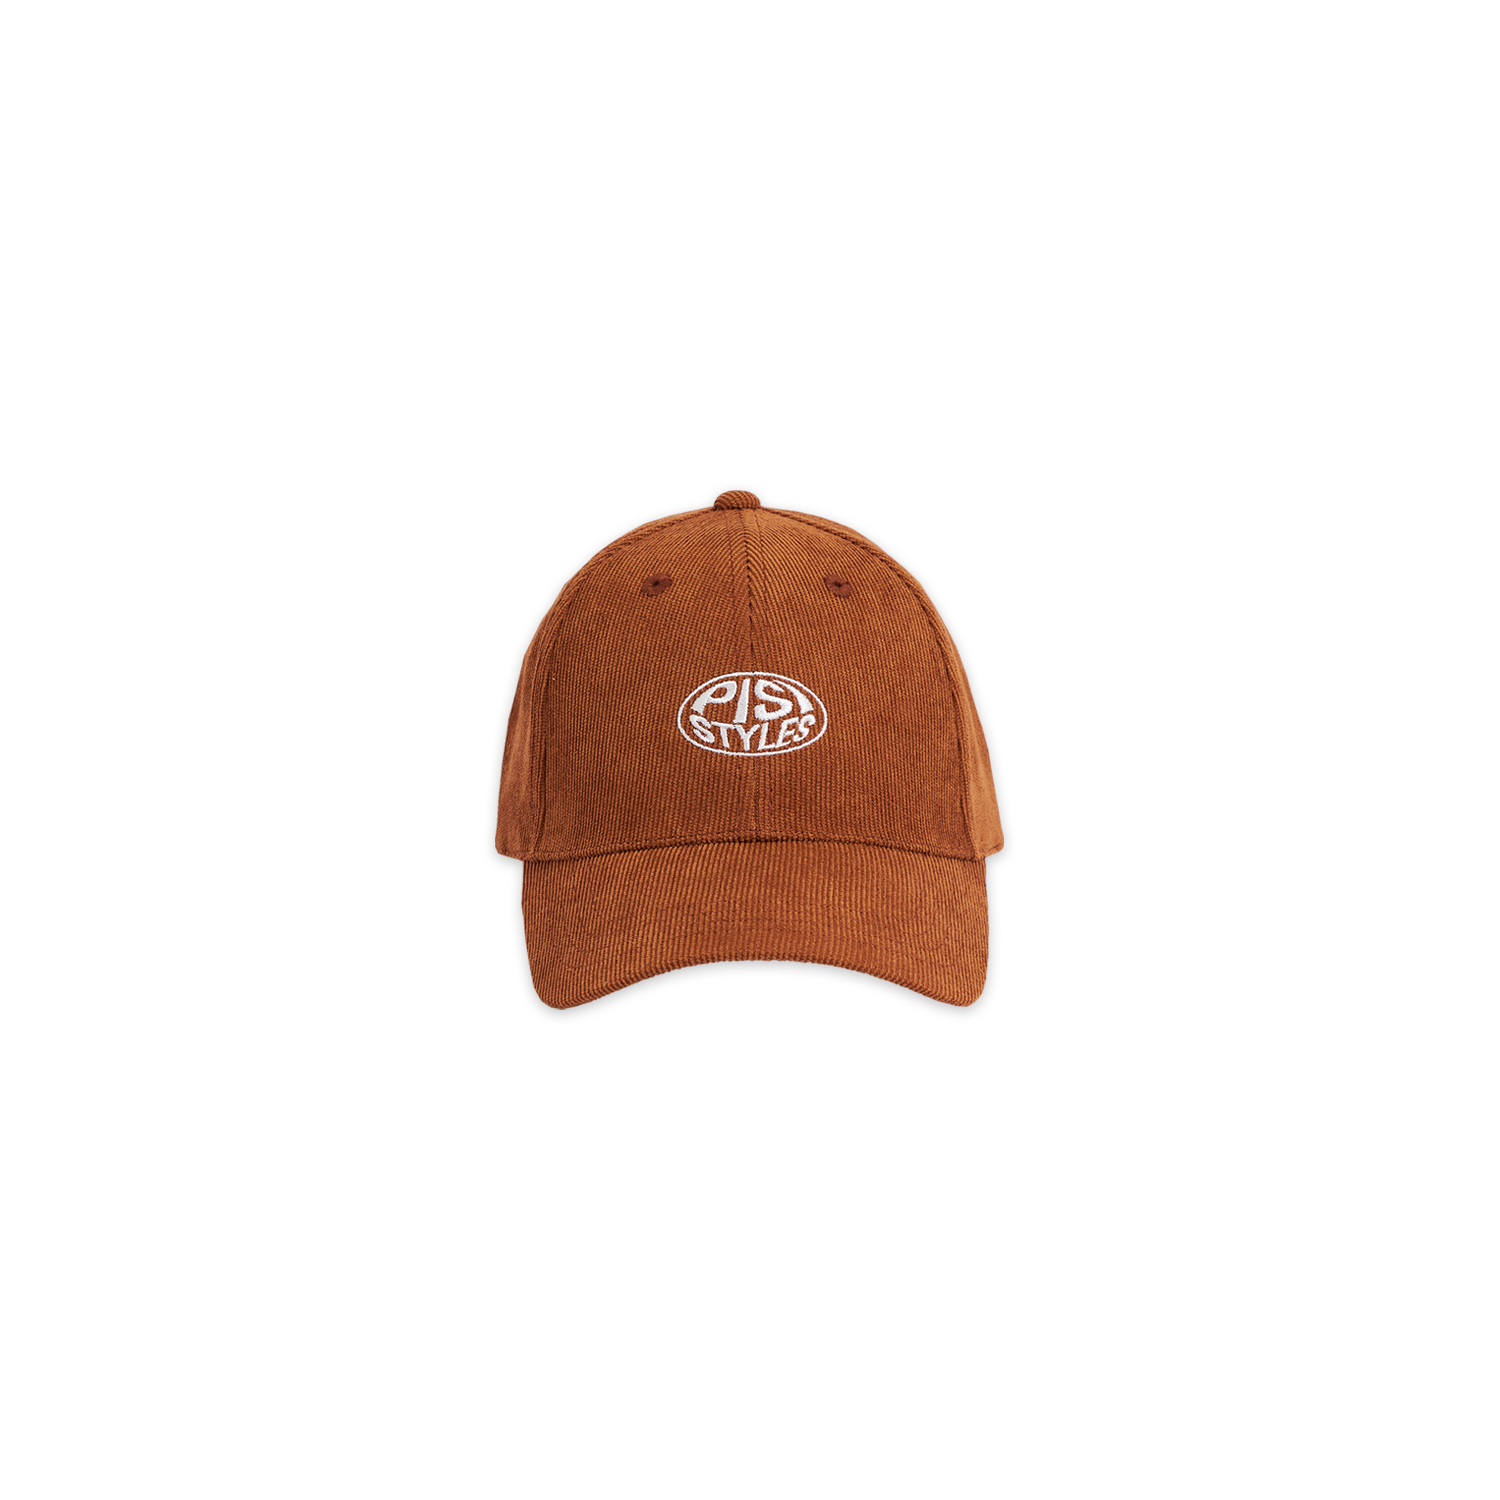 หมวกแก๊ป PISI Classic Logo Corduroy Cap 01 ผ้าลูกฟูก | Gold Brown